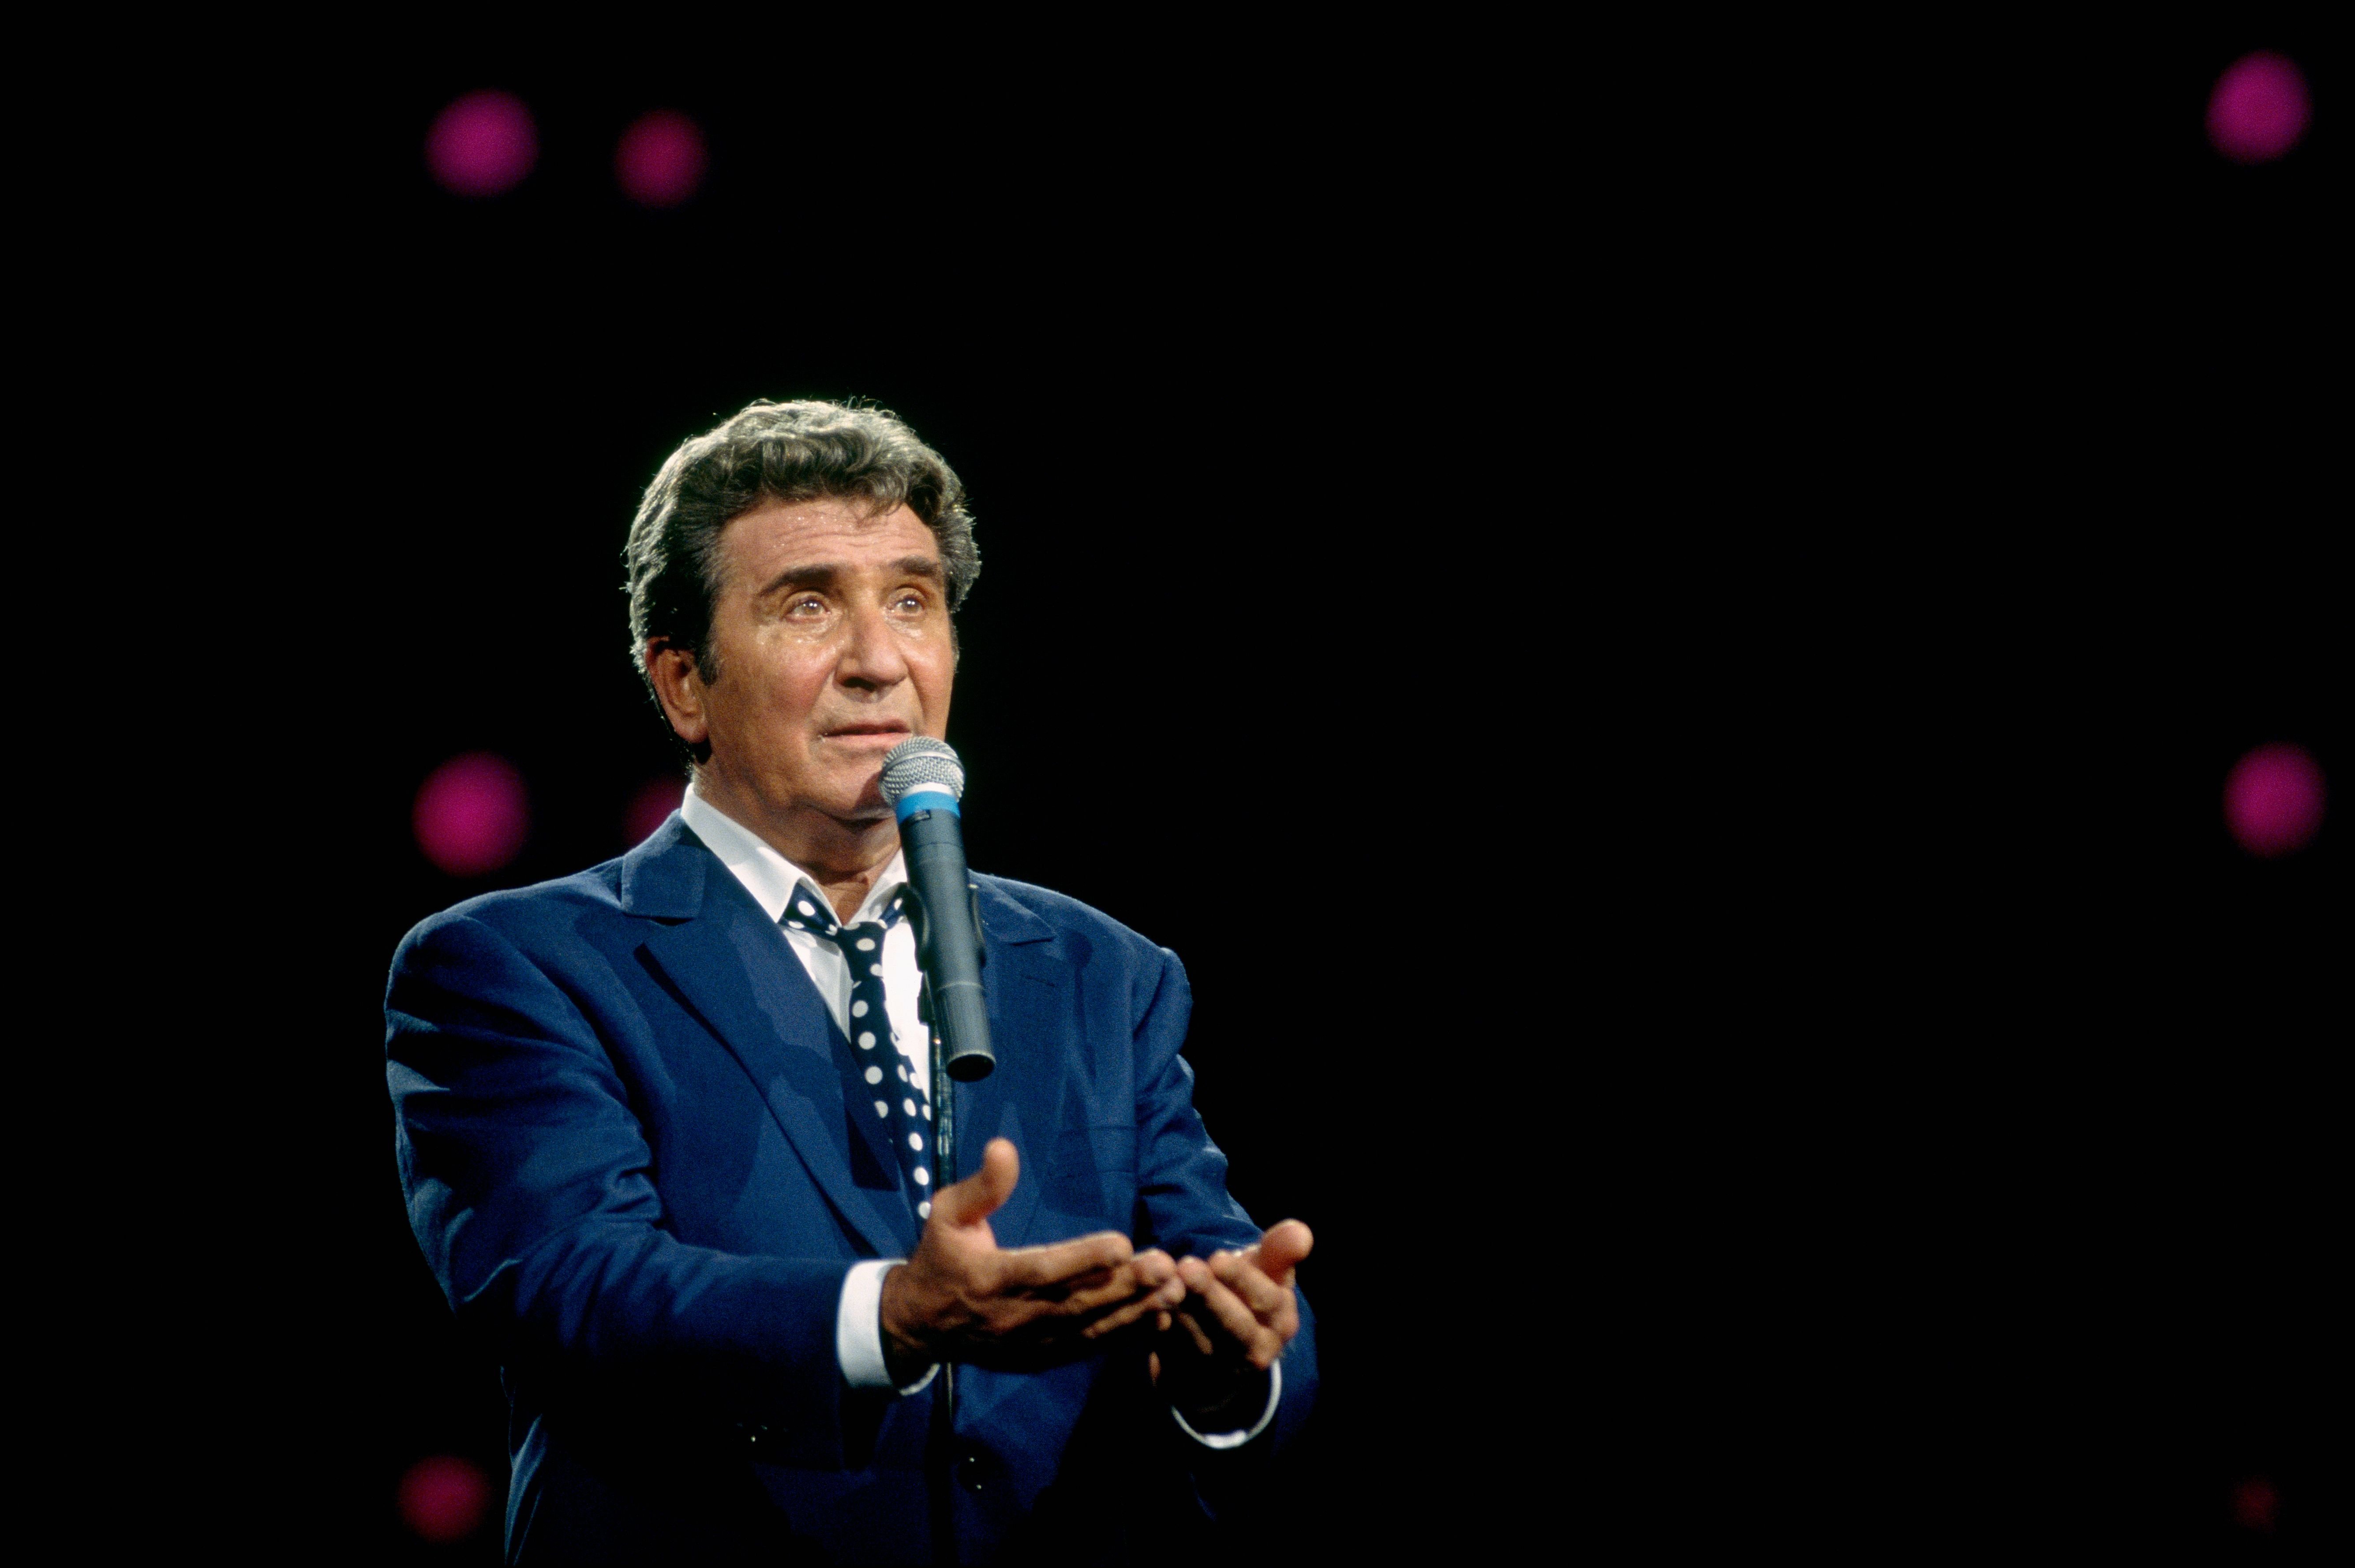 Le chanteur Gilbert Bécaud sur scène. l Photo : Getty Images